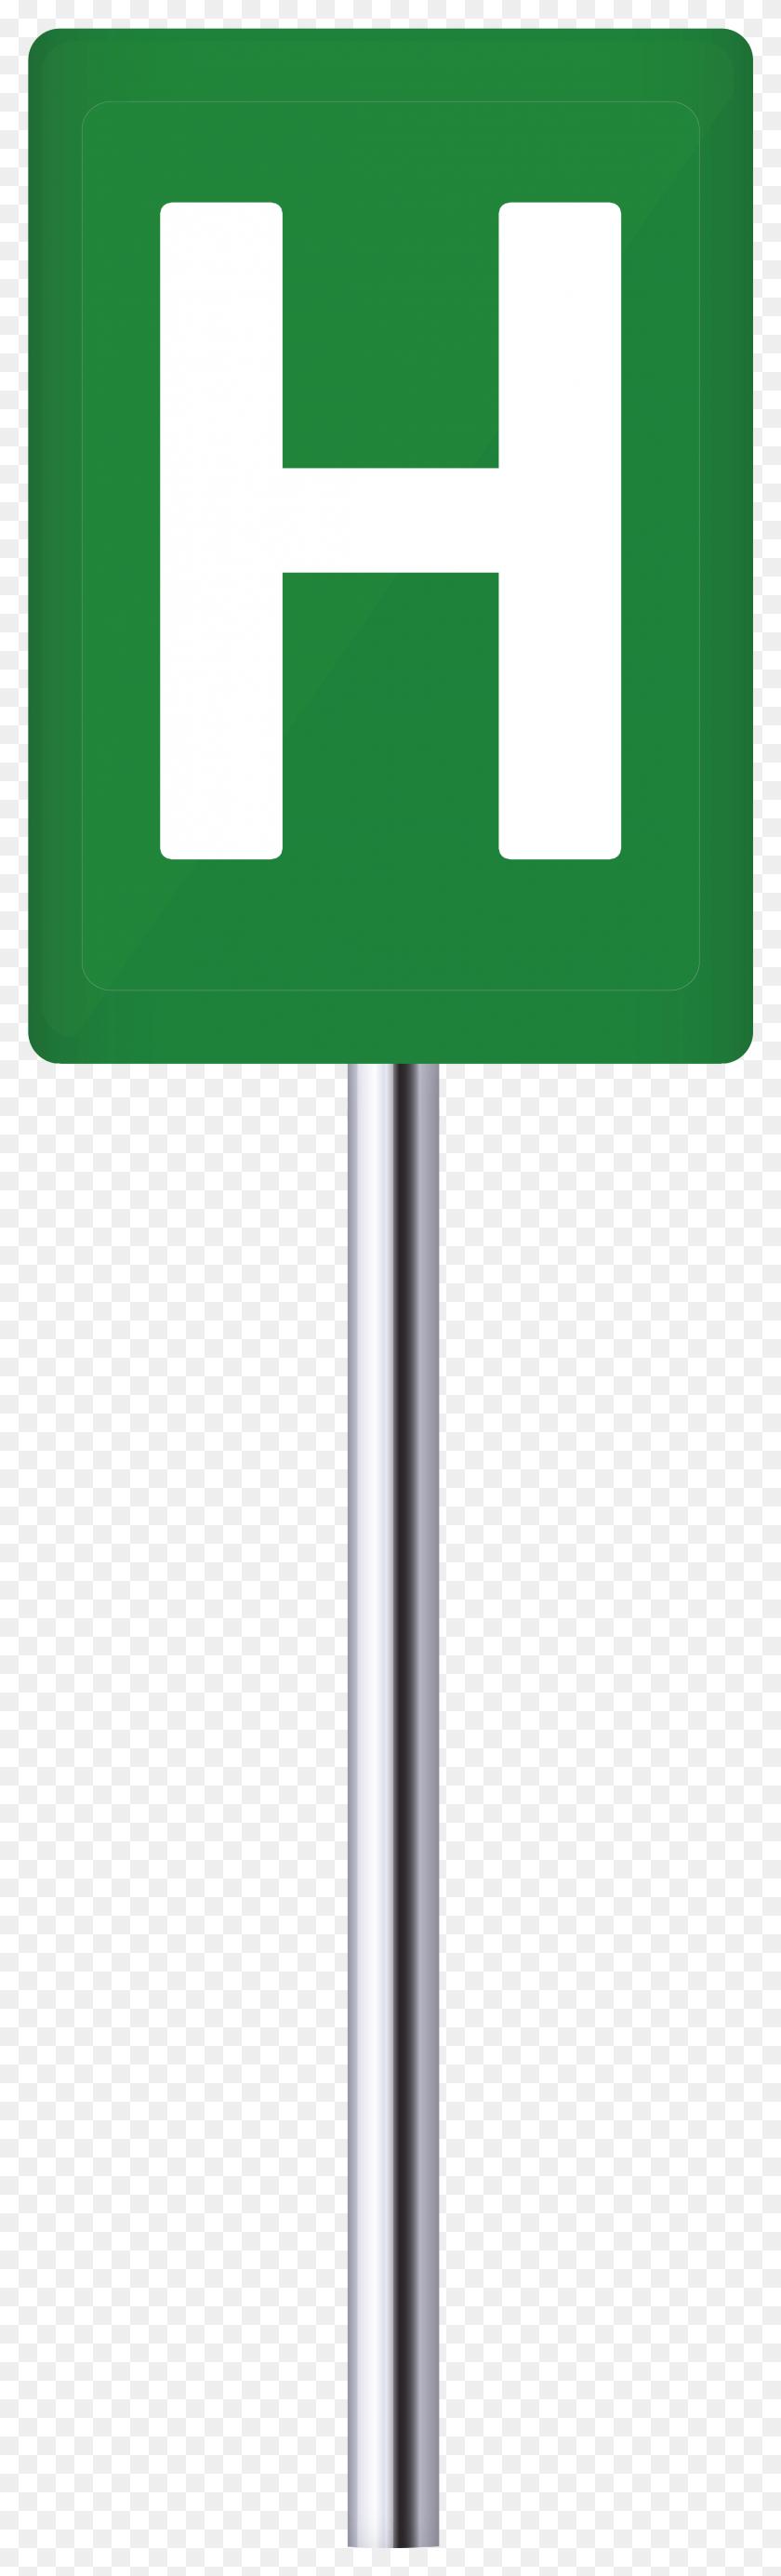 2283x7934 Зеленые Синие Больничные Знаки Картинки Дорожный Знак, Символ, Дорожный Знак, Знак Hd Png Скачать